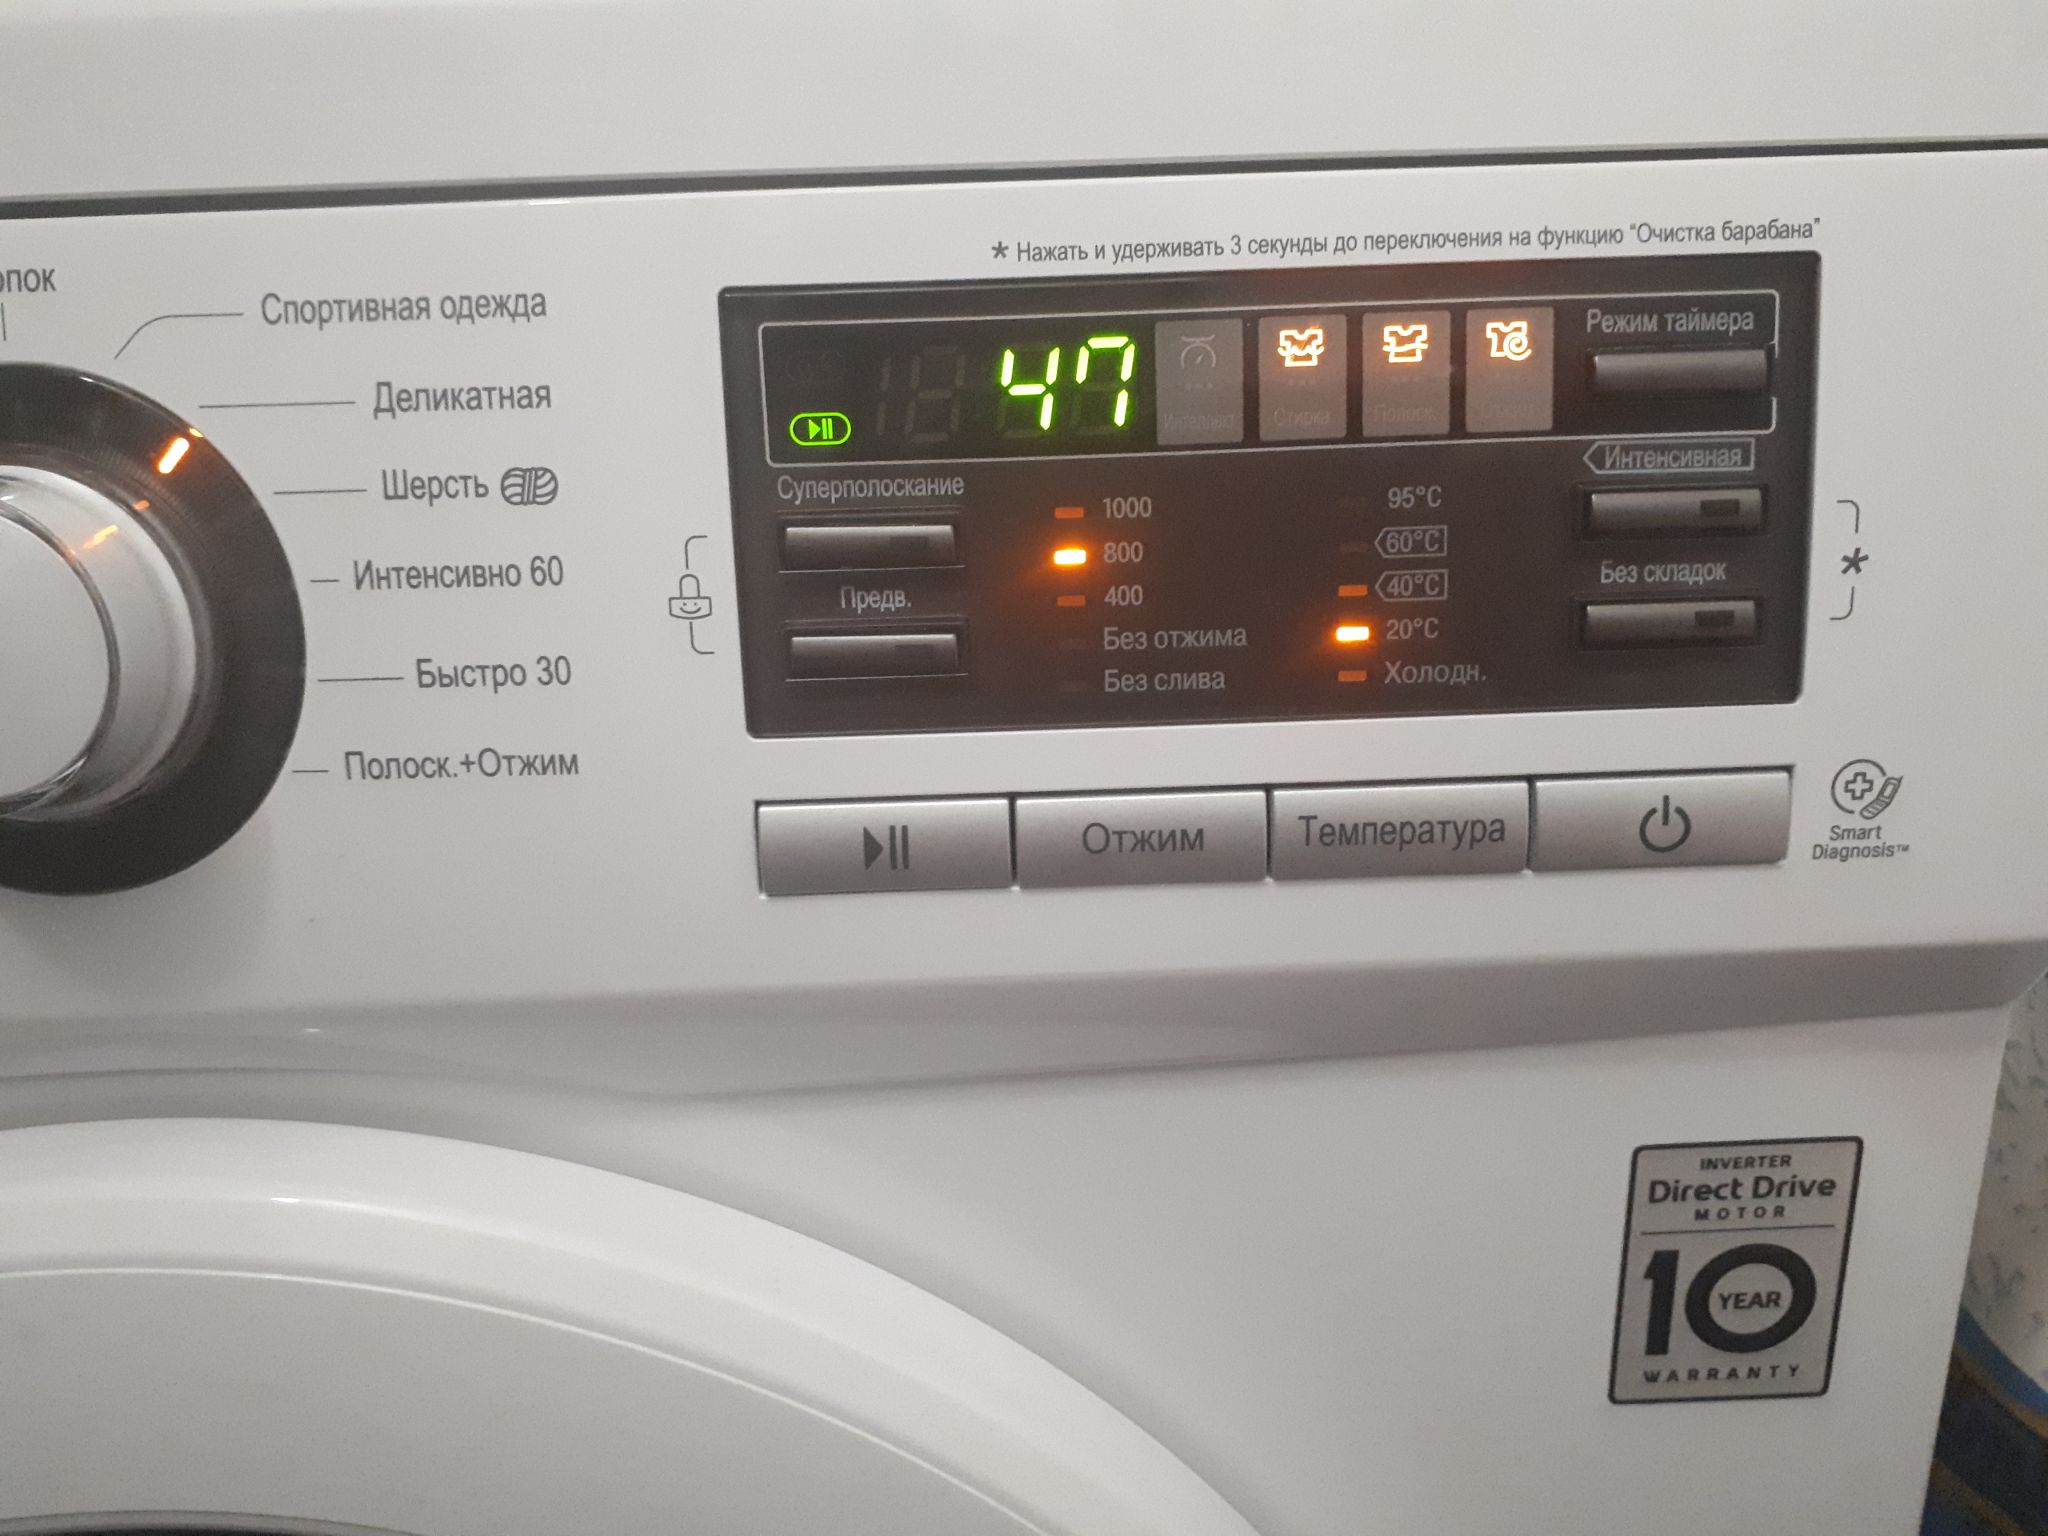 Лучшие стиральные машины lg - рейтинг 2022